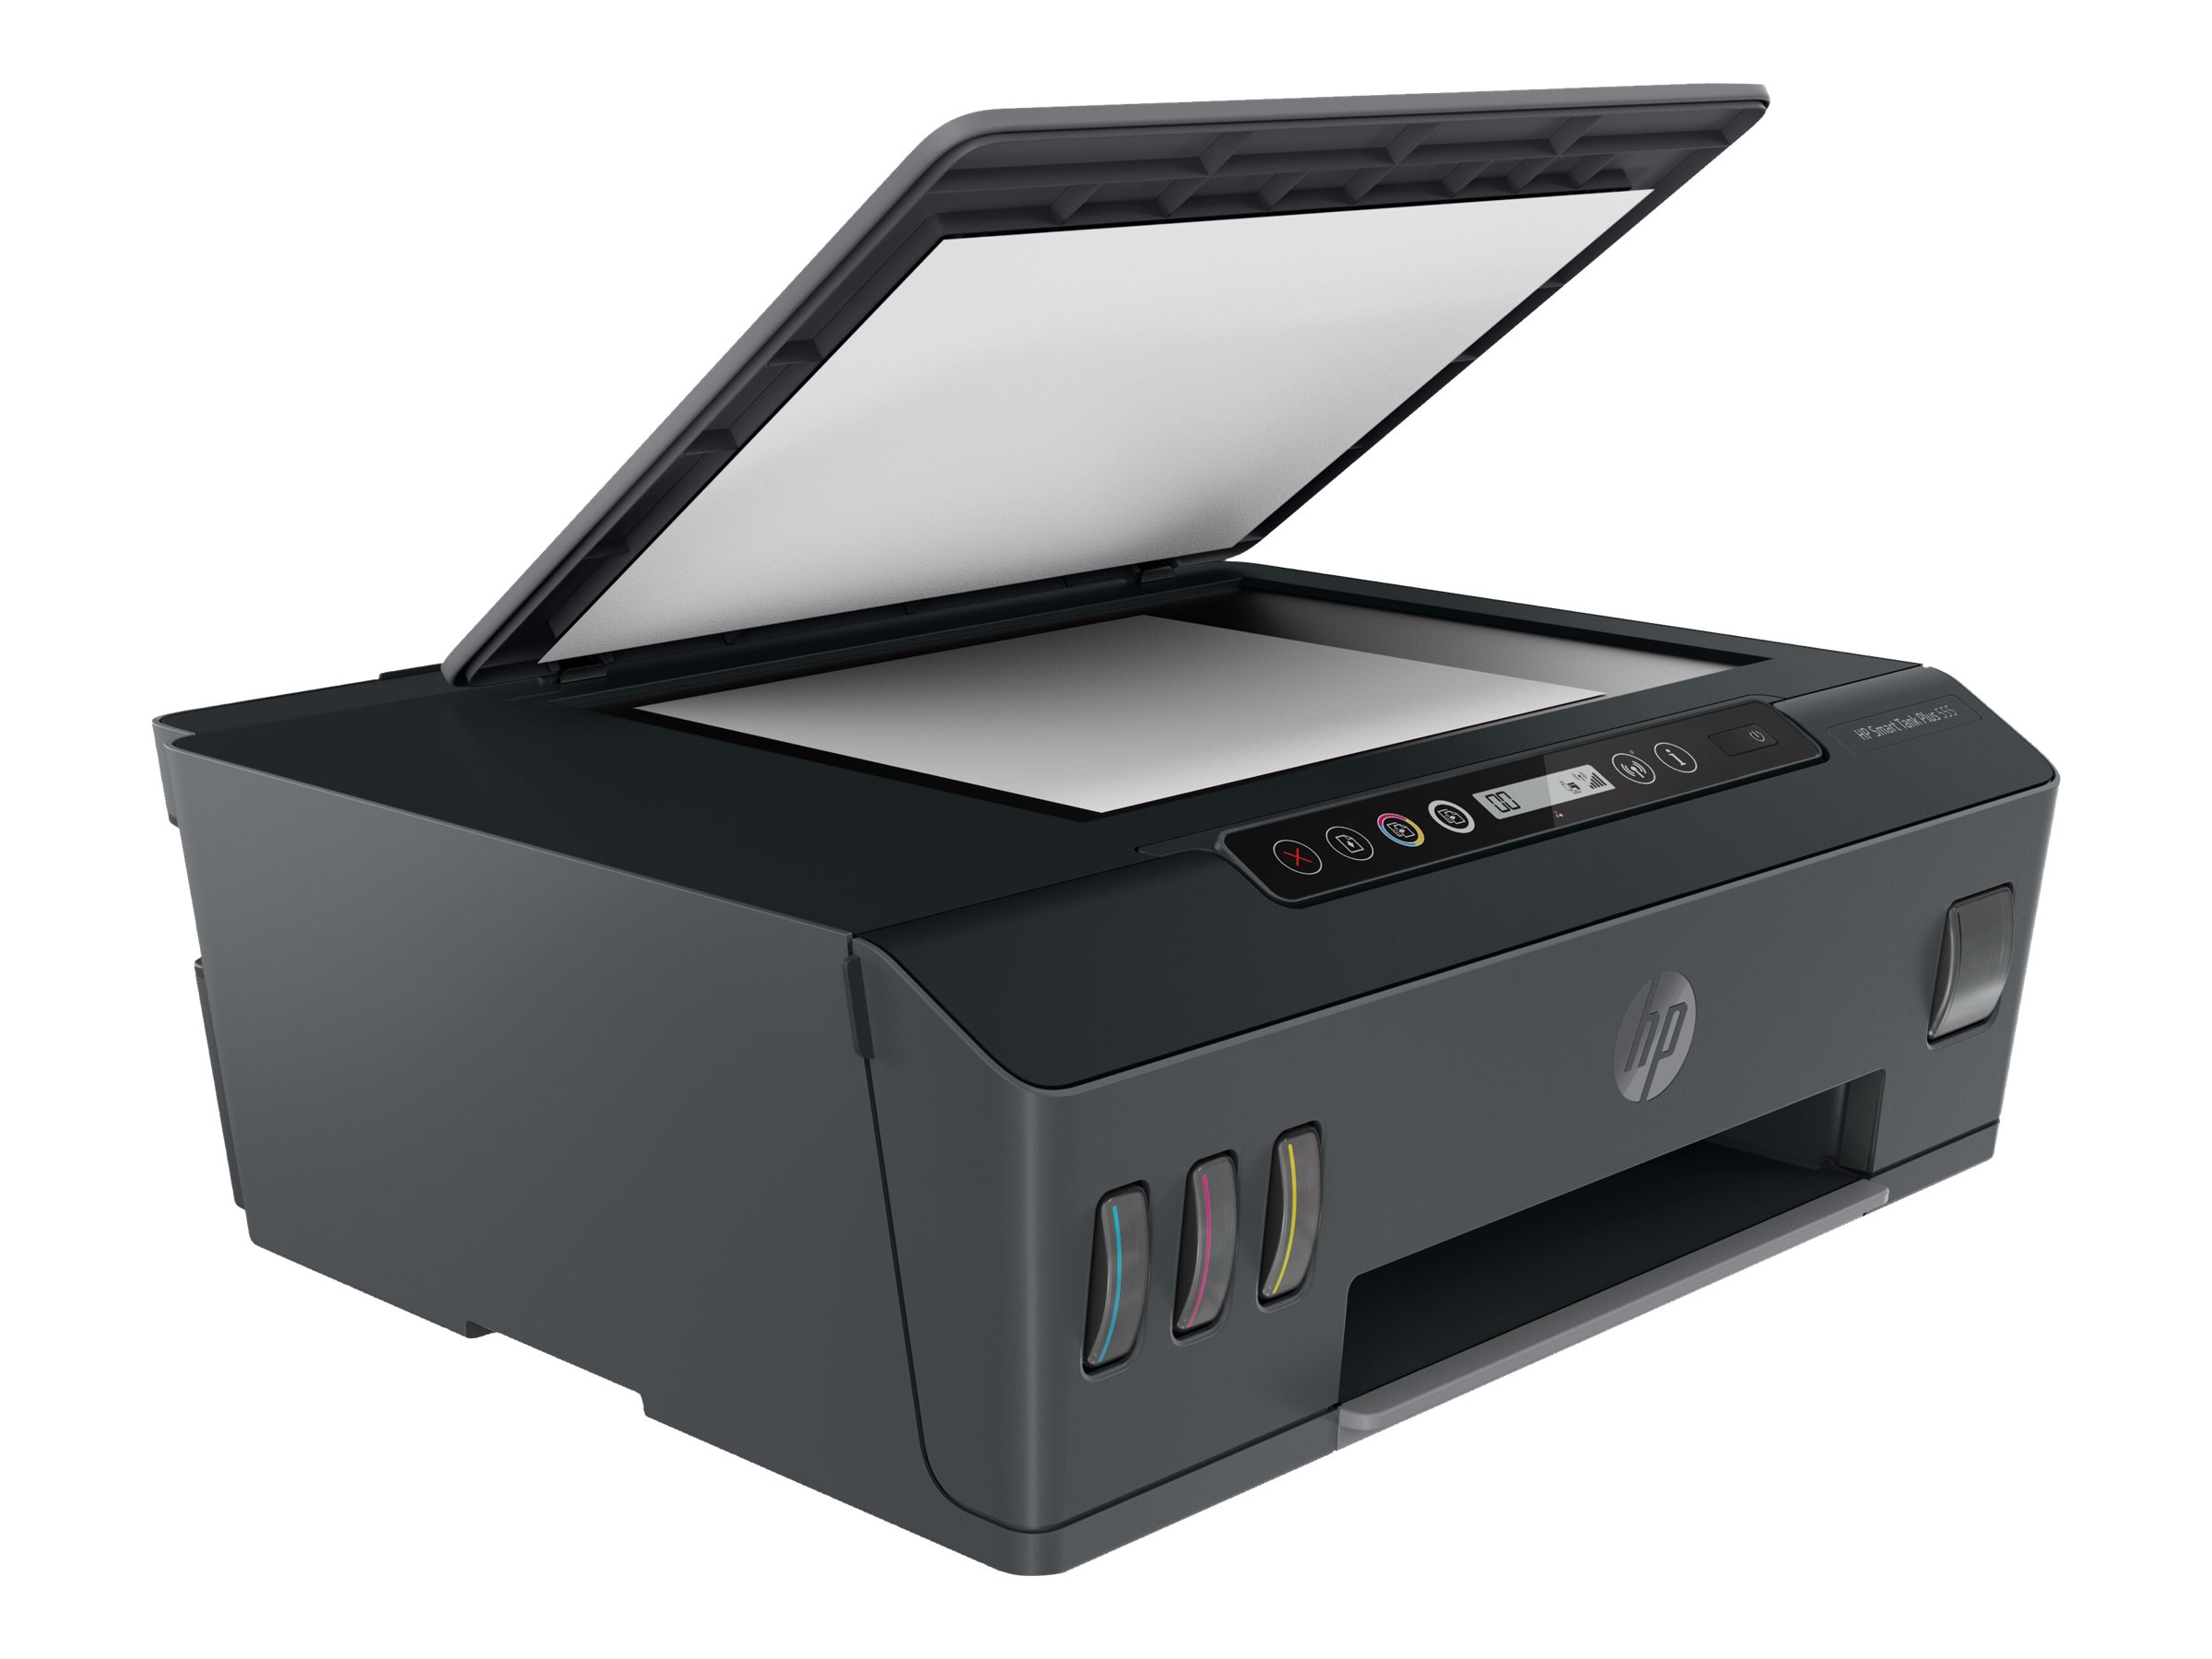 HP Smart Tank Plus 555 All-in-One - Imprimante multifonctions - couleur - jet d'encre - rechargeable - Legal (216 x 356 mm) (original) - A4/Legal (support) - jusqu'à 10 ppm (copie) - jusqu'à 11 ppm (impression) - 100 feuilles - USB 2.0, Wi-Fi(n), Bluetooth - 1TJ12A#BHC - Imprimantes multifonctions